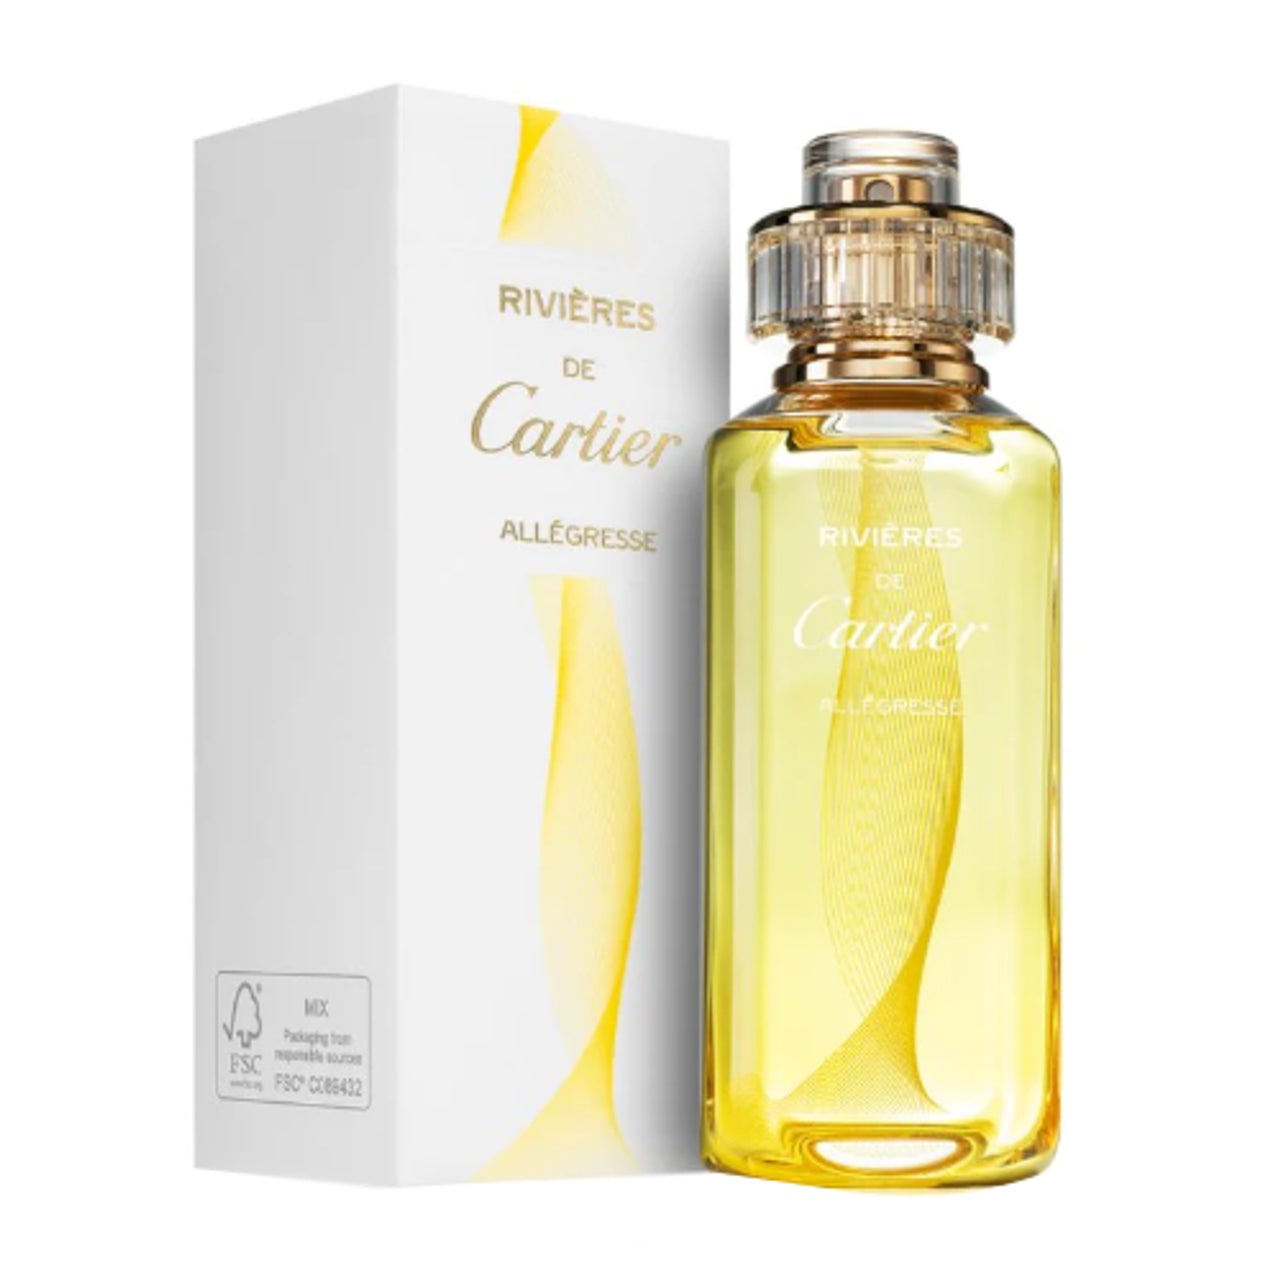 Cartier Rivieres De Cartier Allegresse Eau De Toilette For Women 100ML